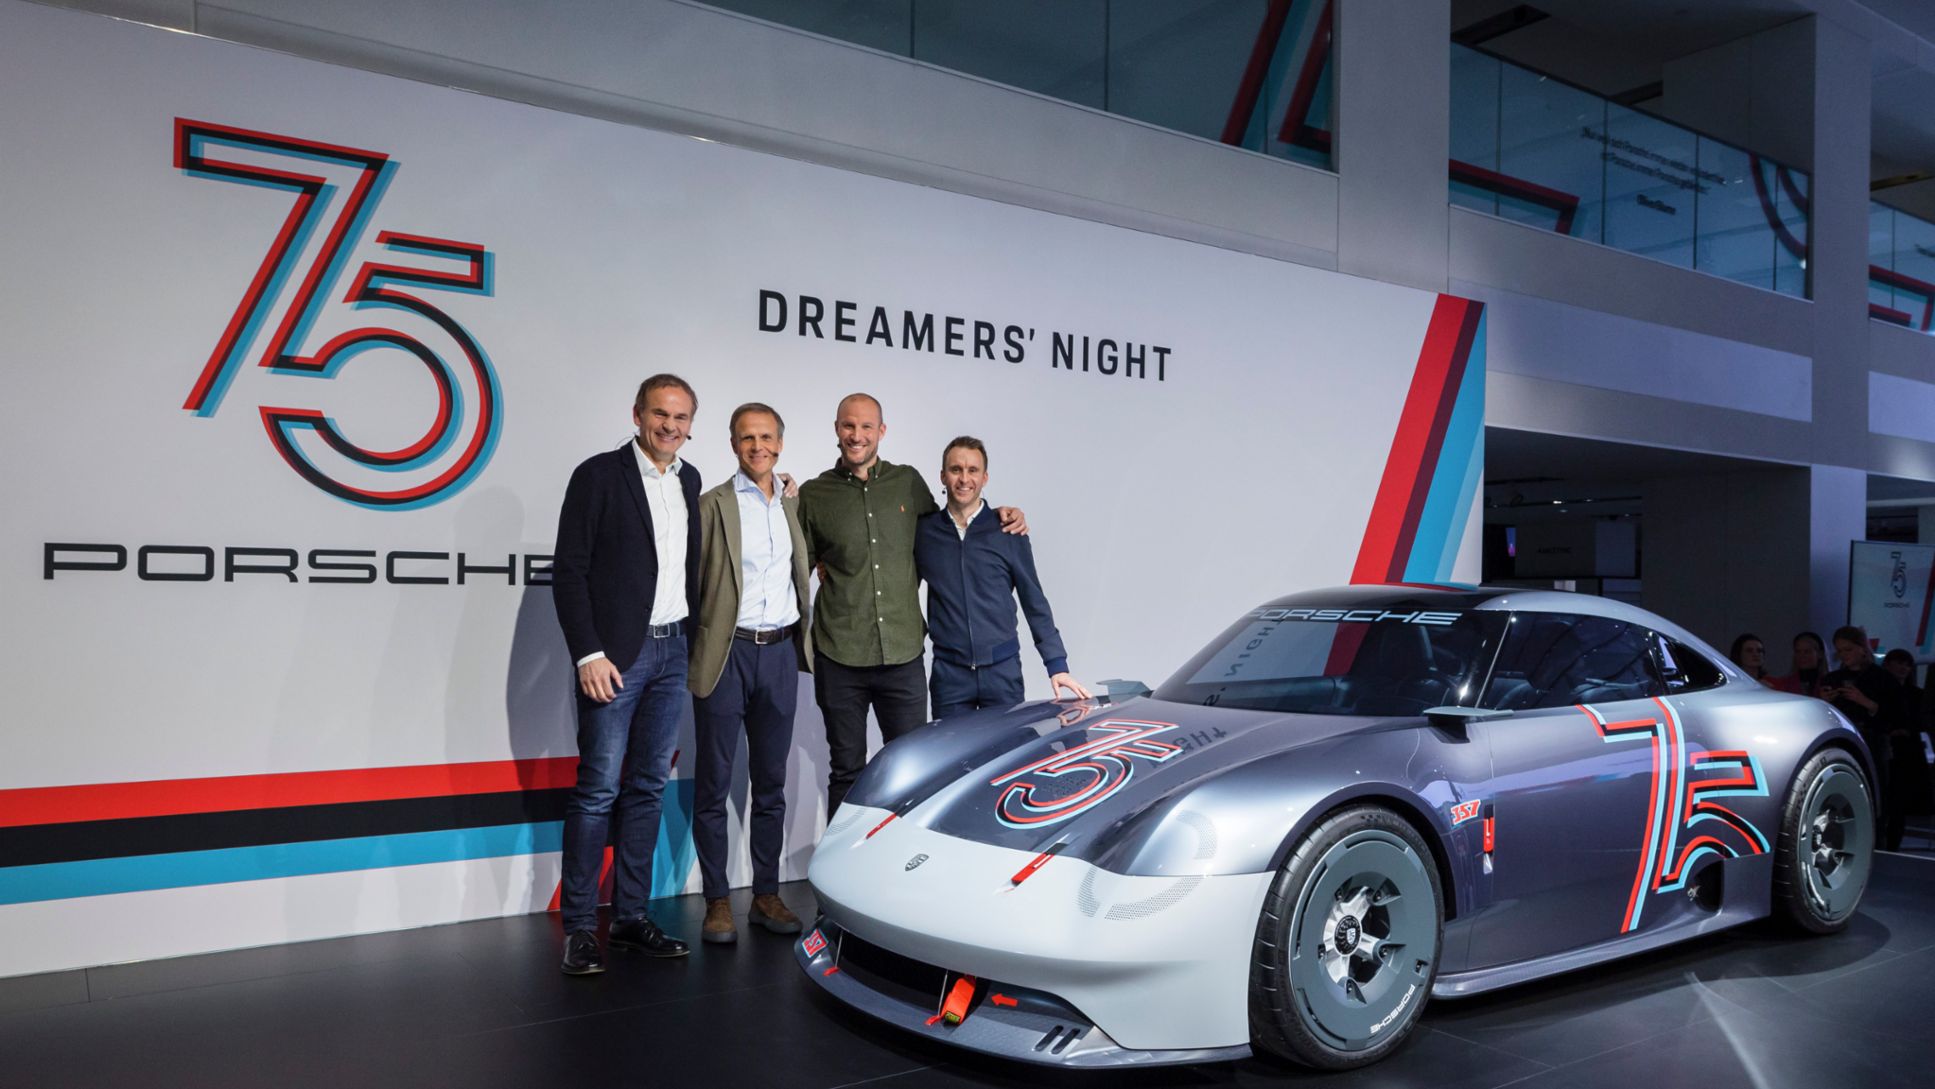 Oliver Blume, Président du Directoire de Porsche AG, Michael Mauer, Vice-président du Style Porsche ainsi que les ambassadeurs de la marque Aksel Lund Svindal et Timo Bernhard aux côtés de la Porsche Vision 357 (de gauche à droite).